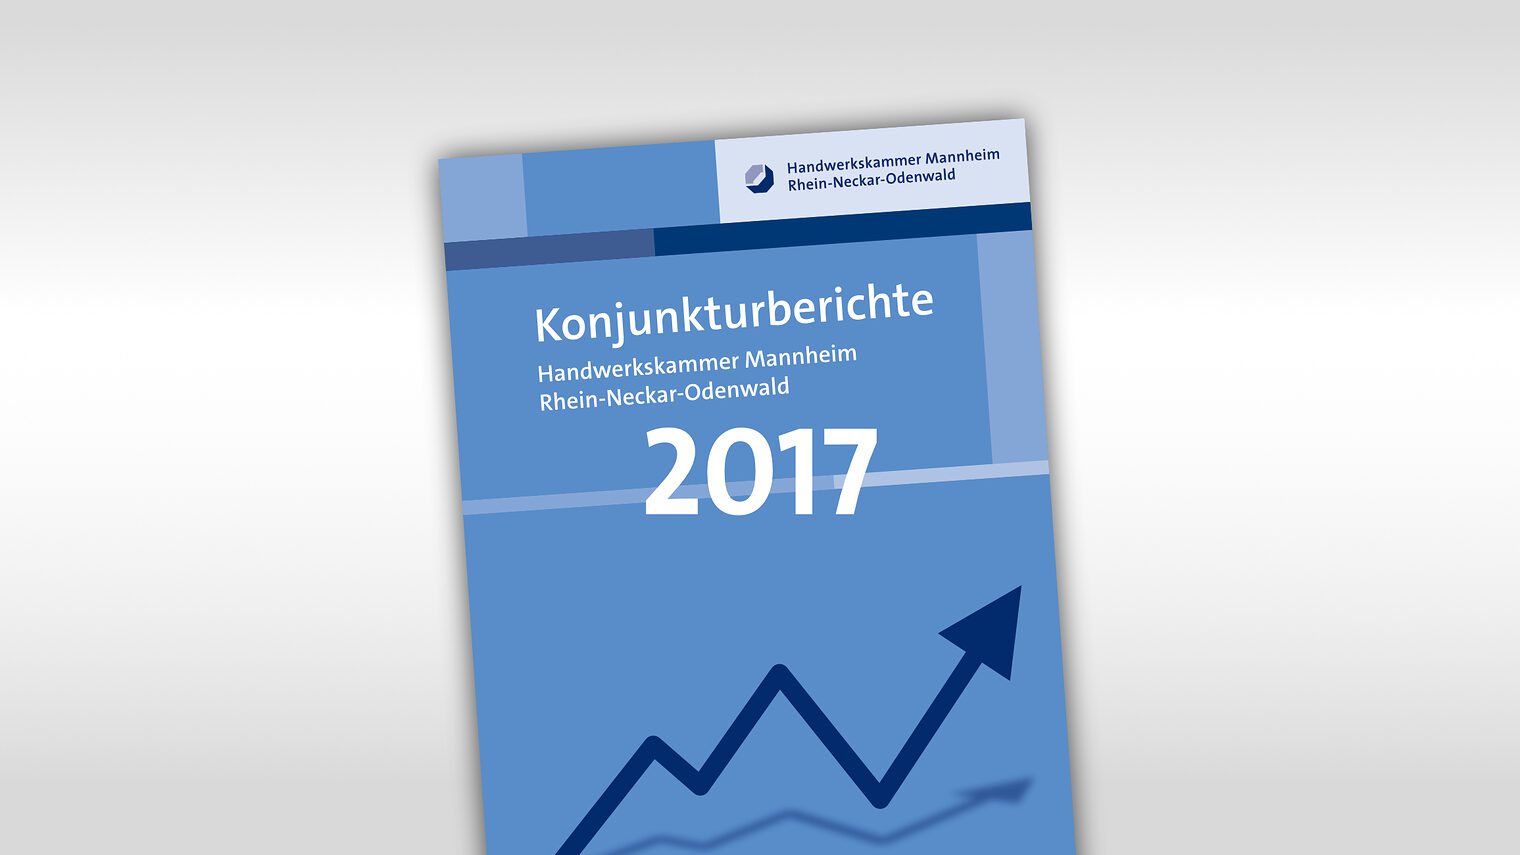 Titelmotiv Konjunkturbericht plus Jahreszahl 2017